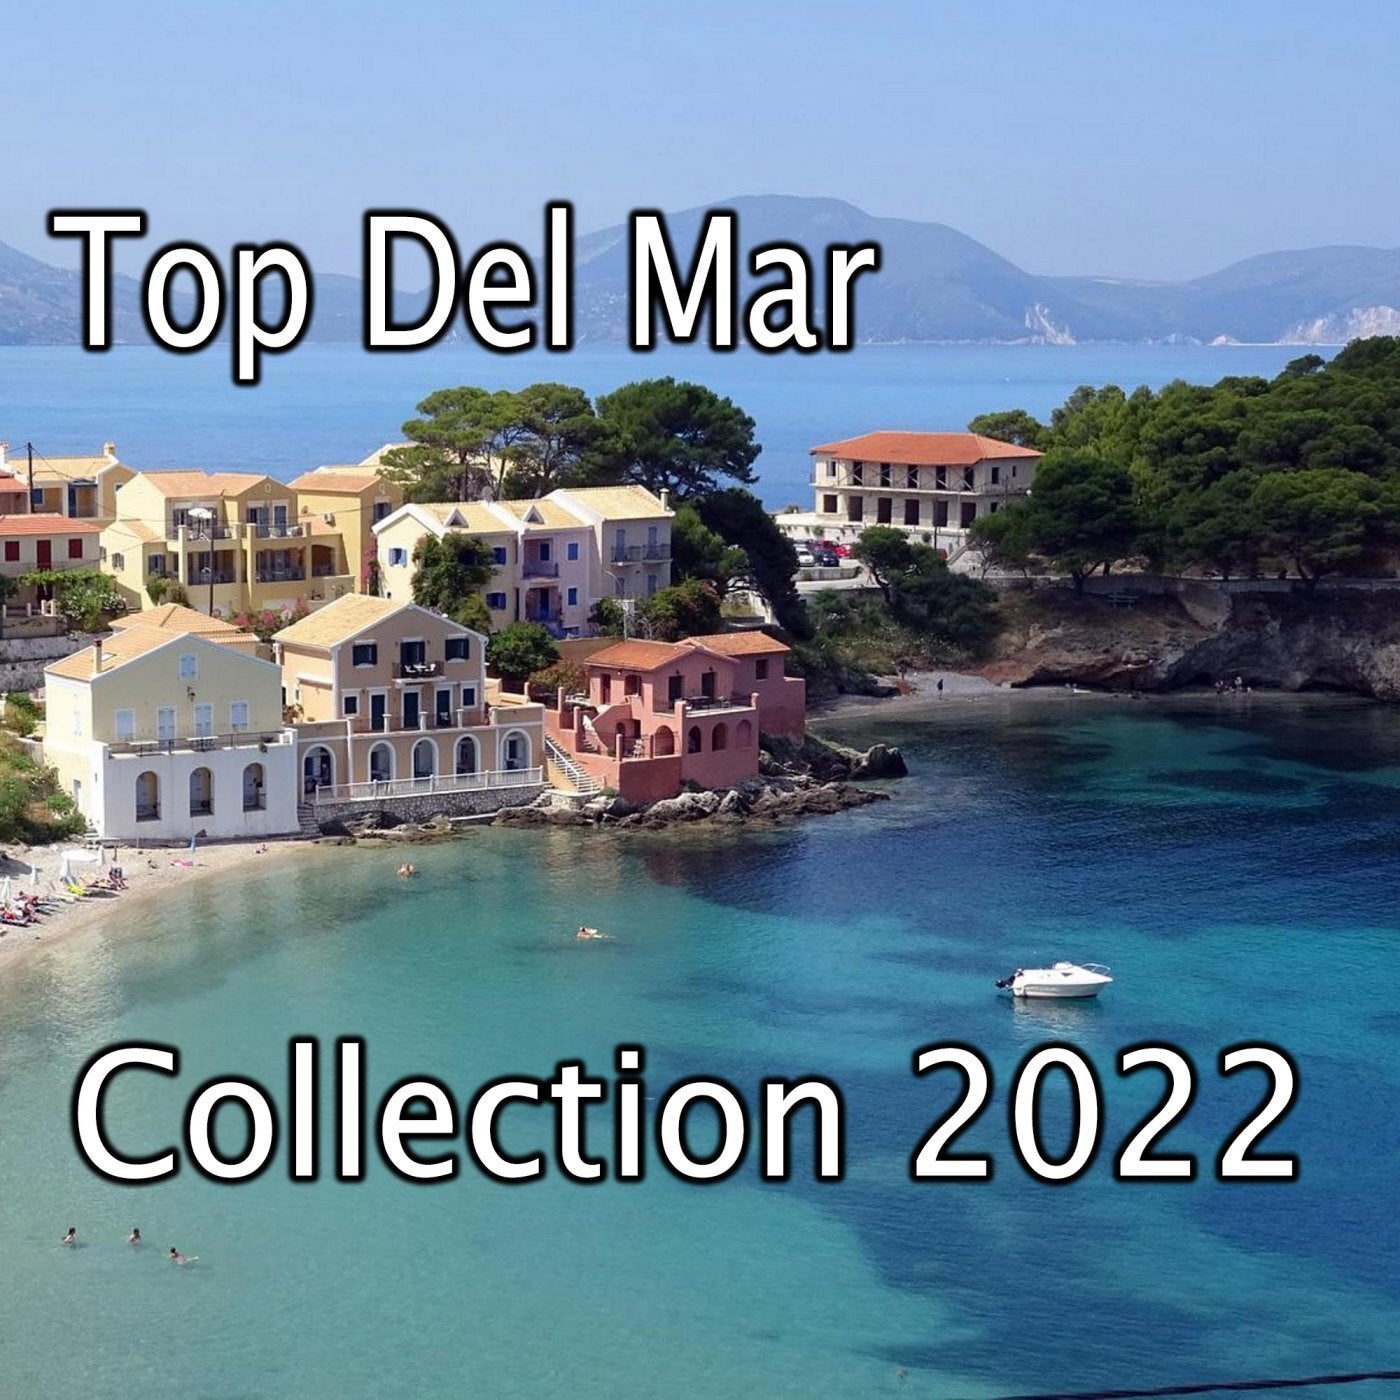 Top Del Mar Collection 2022